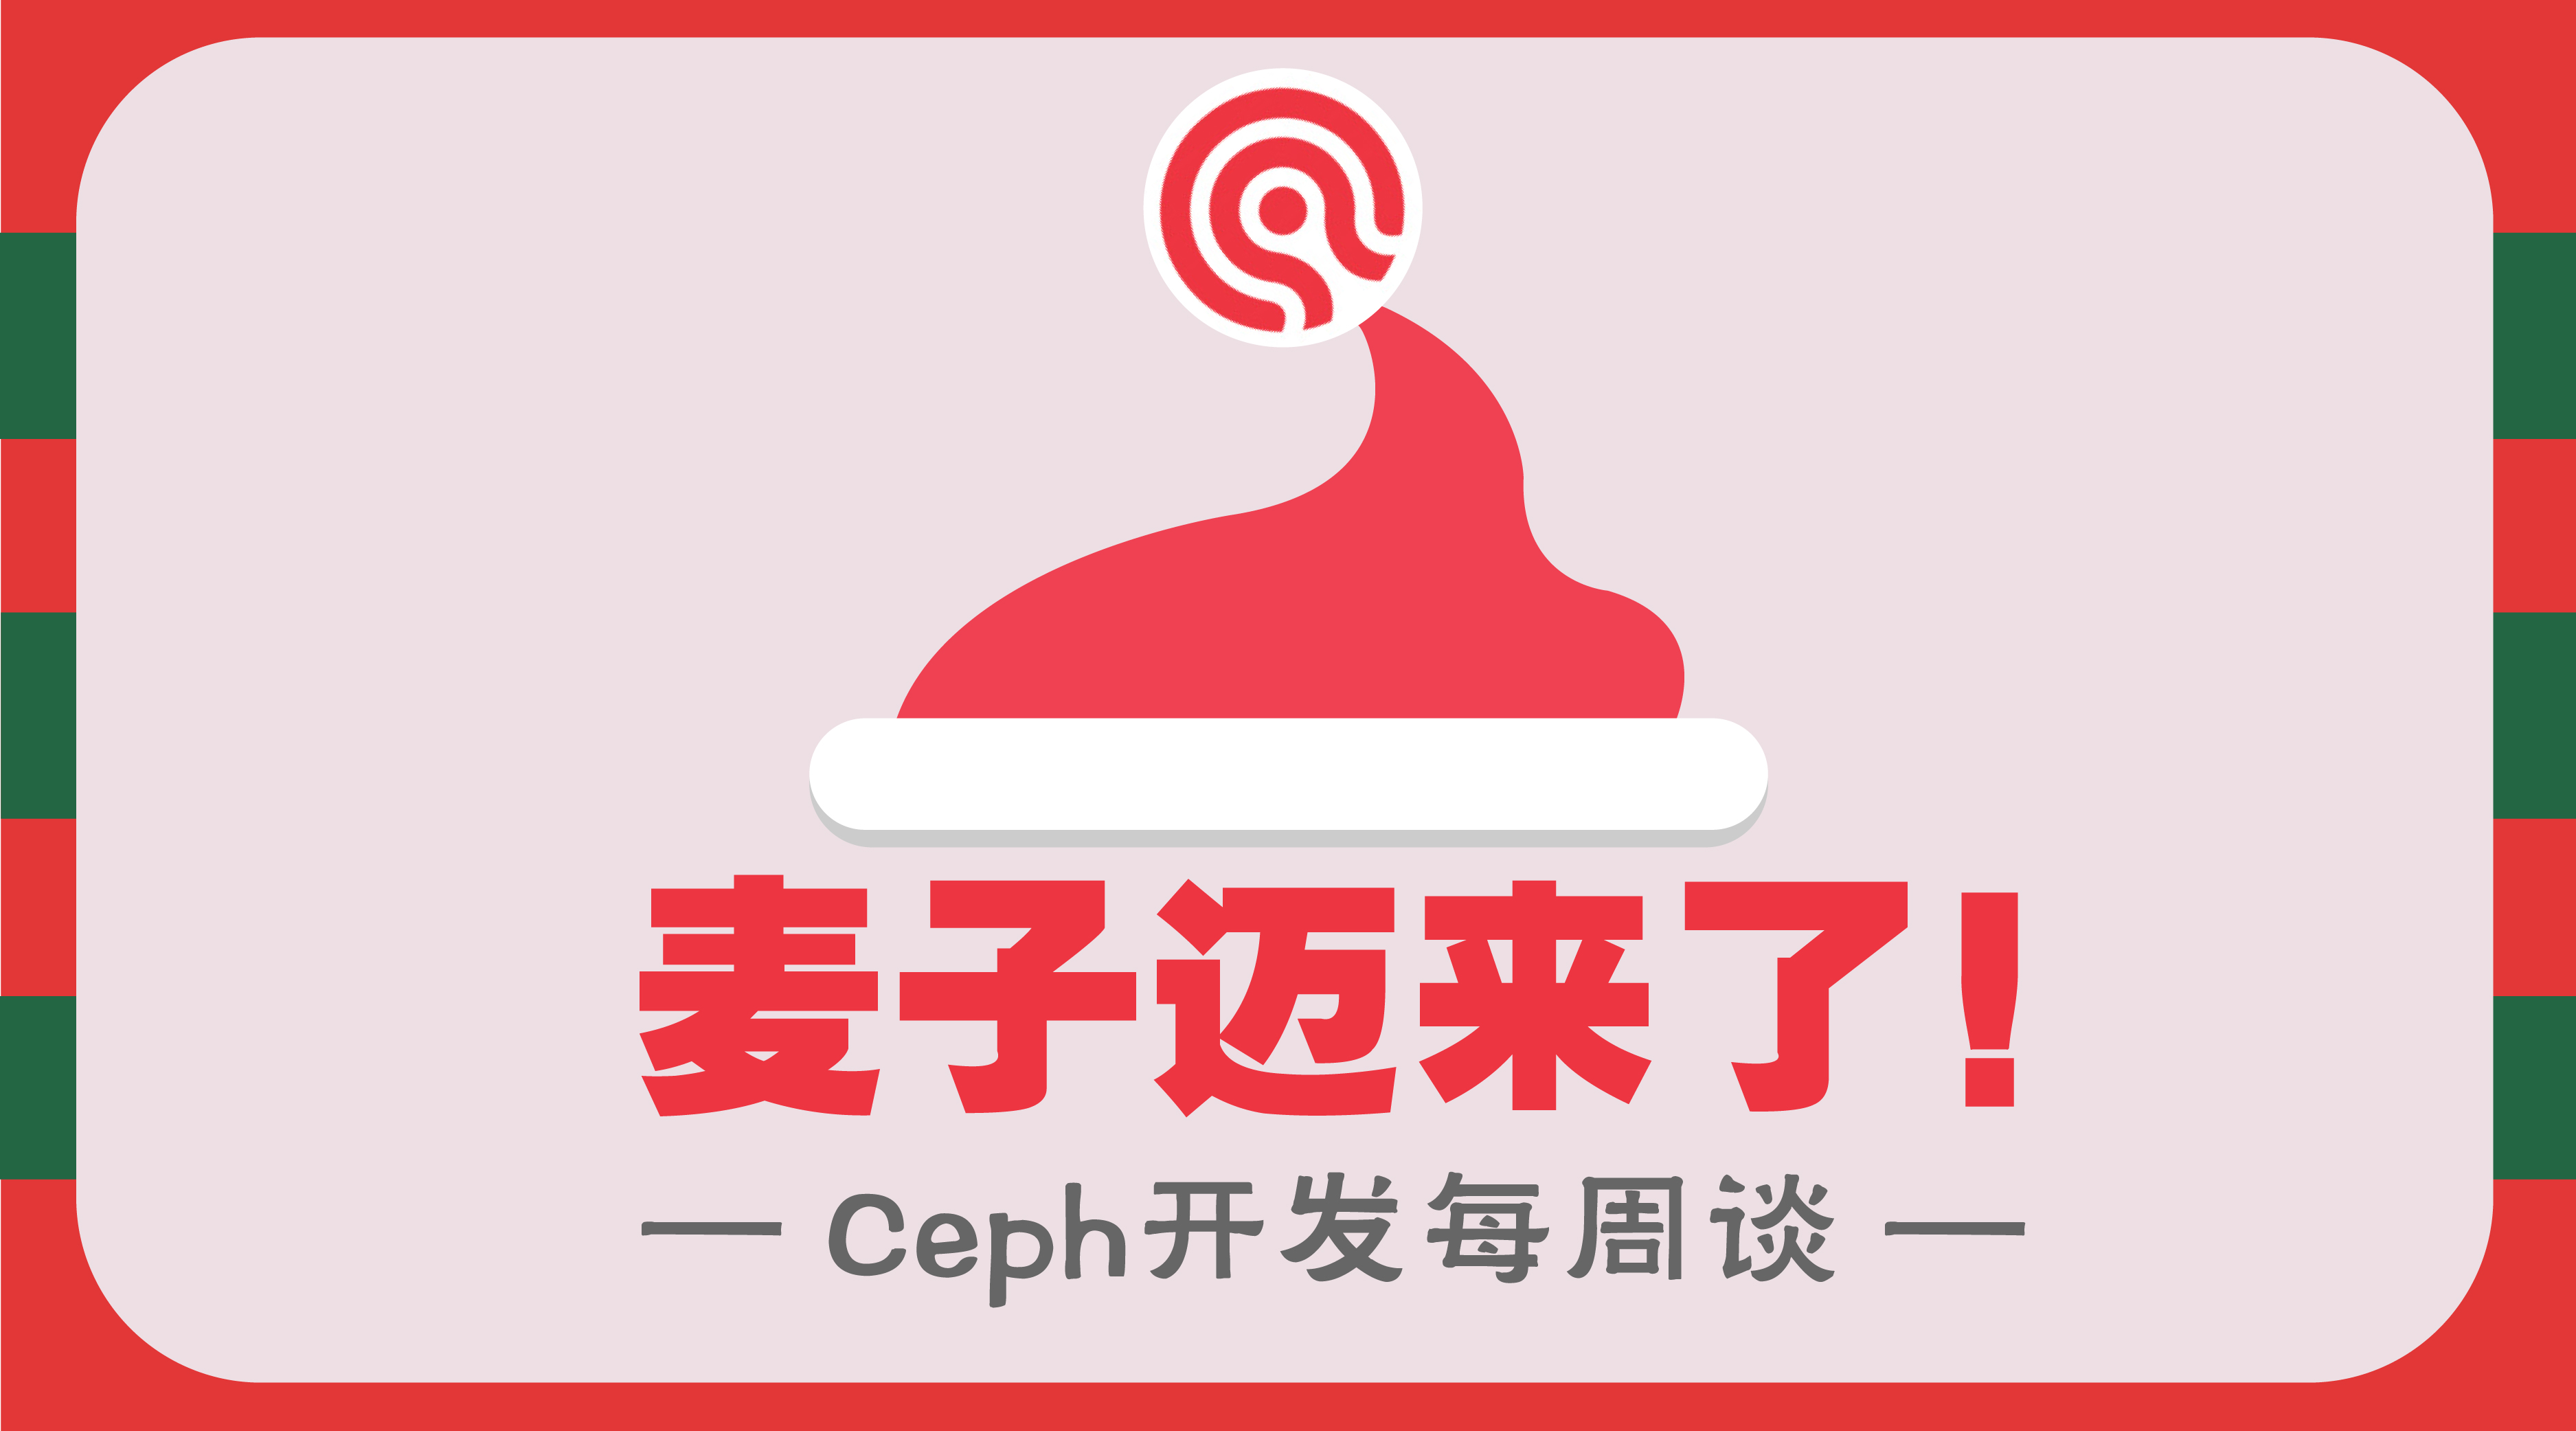 Ceph开发每周谈首发